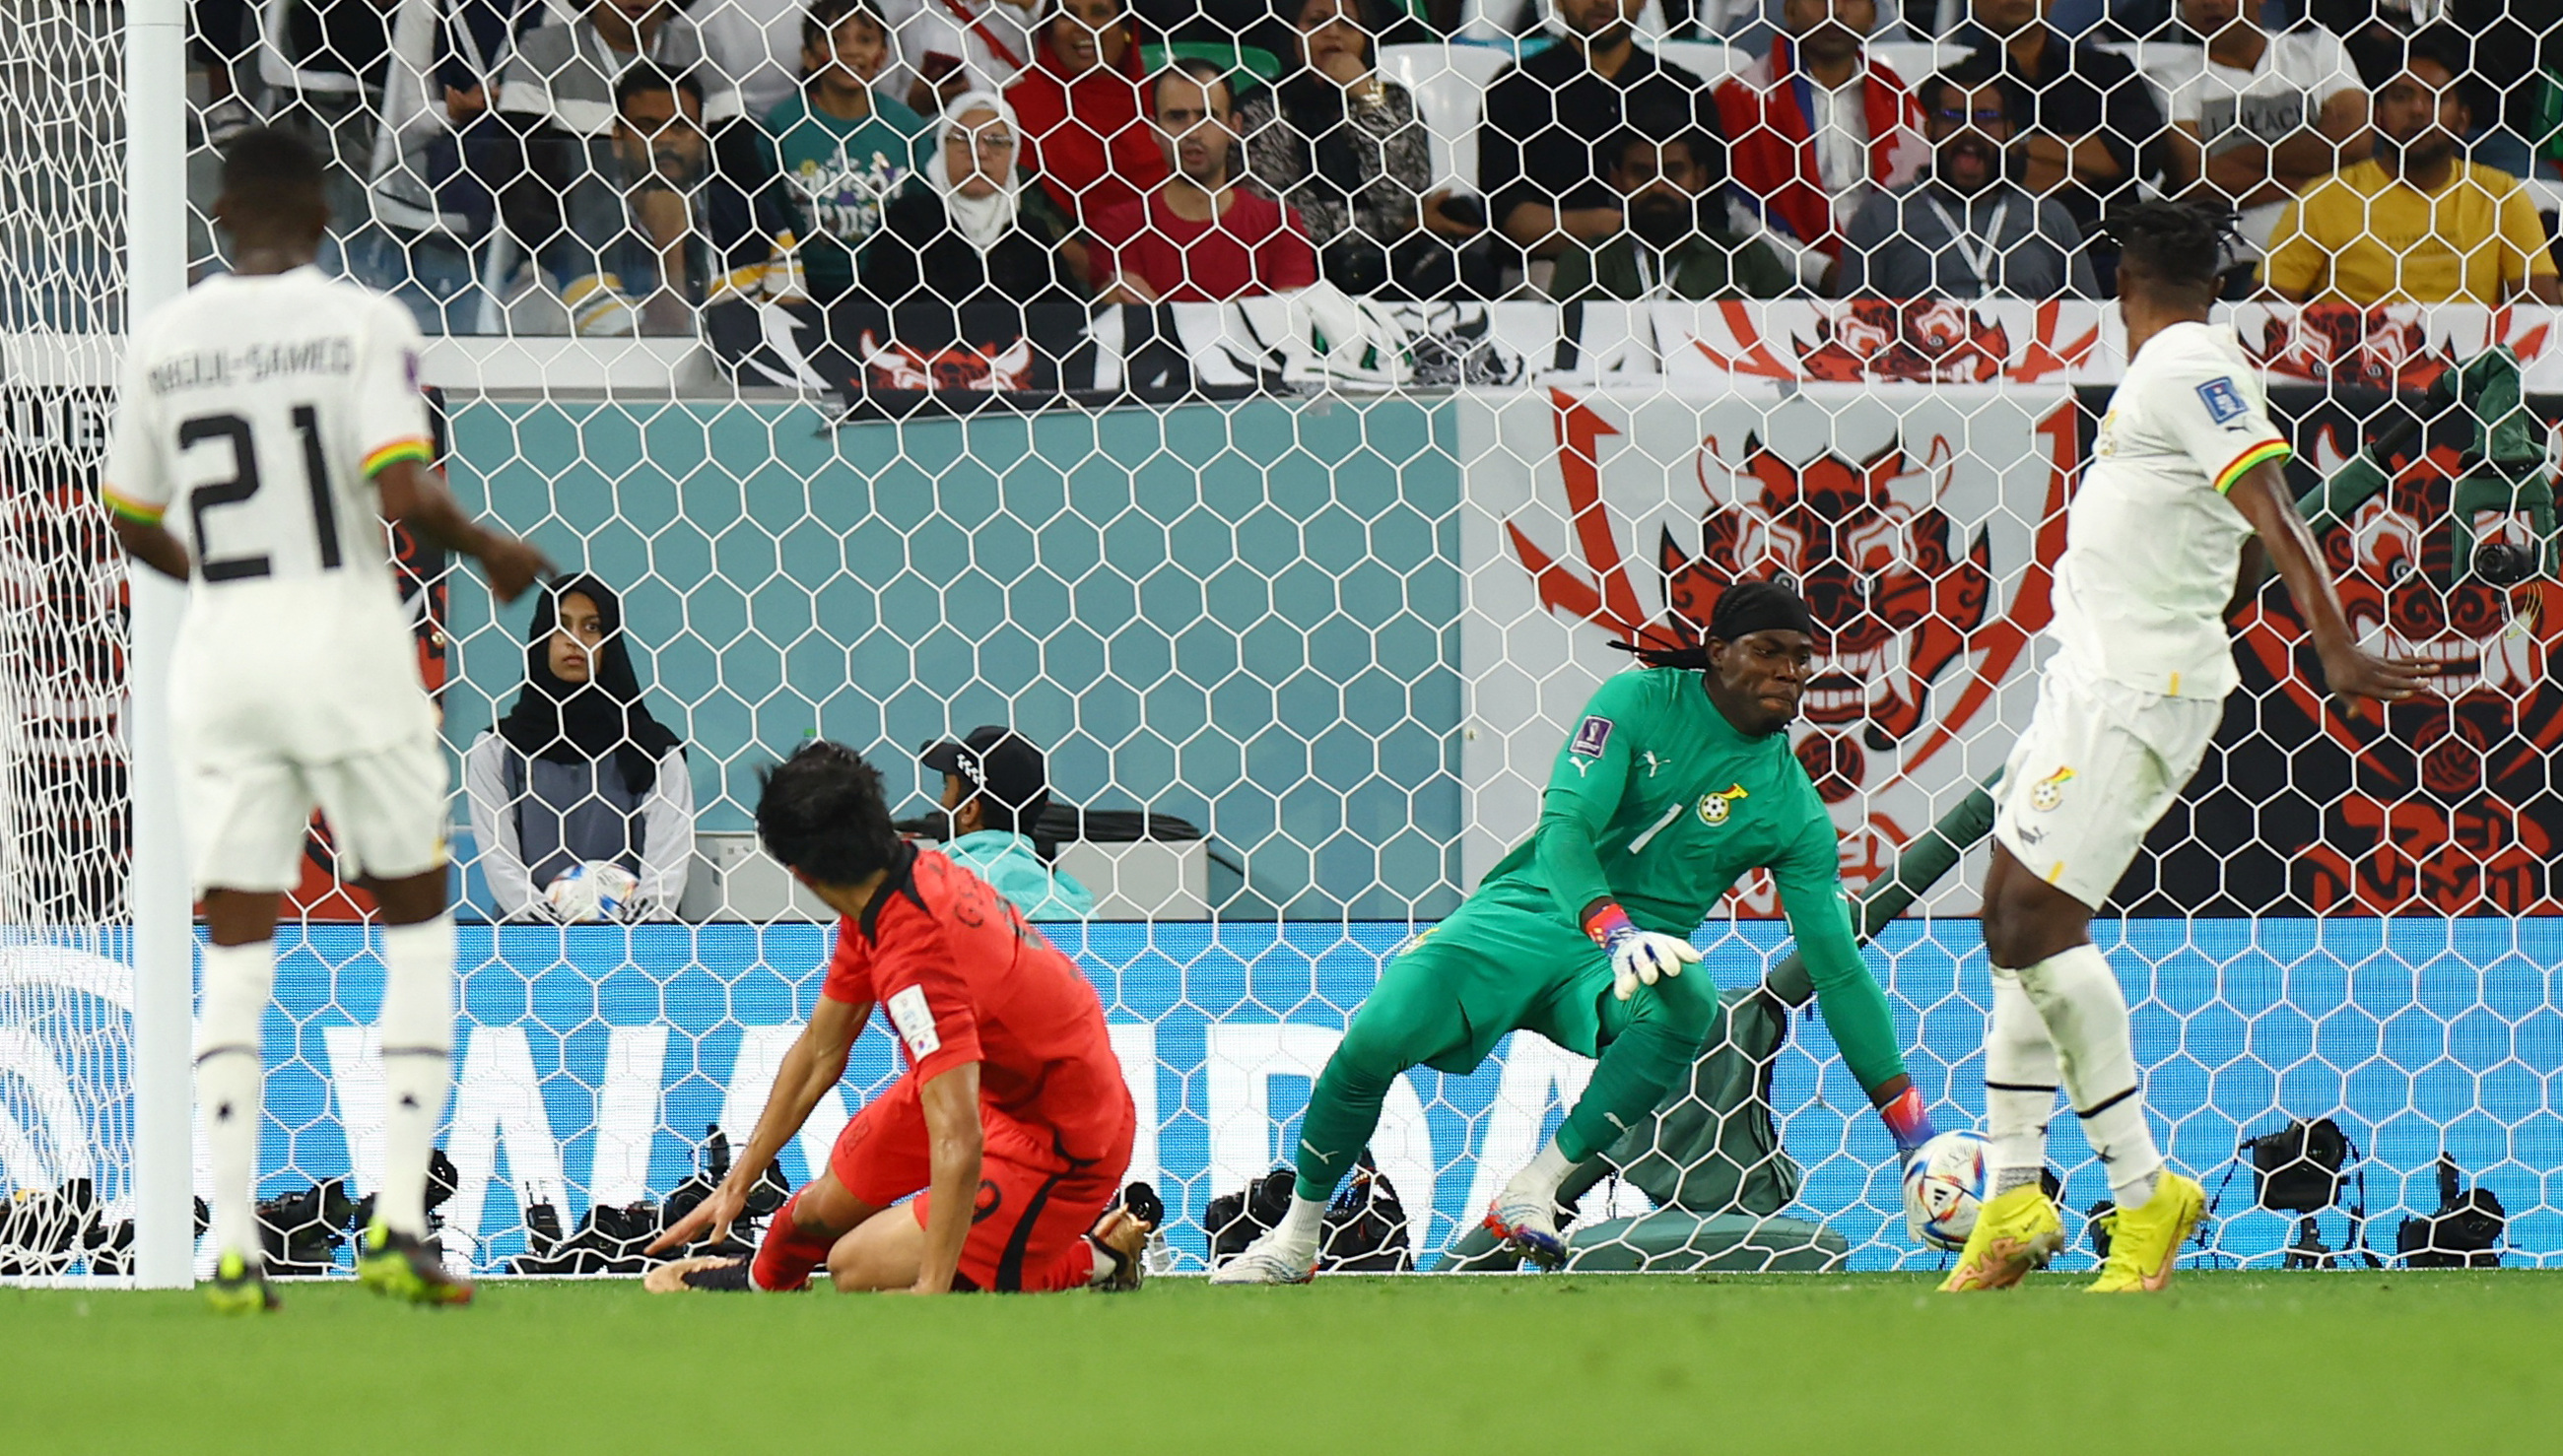 El delantero centro coreano Gue-sung Cho anotó de cabeza el descuento de Corea ante Ghana. Imagen: REUTERS/Molly Darlington